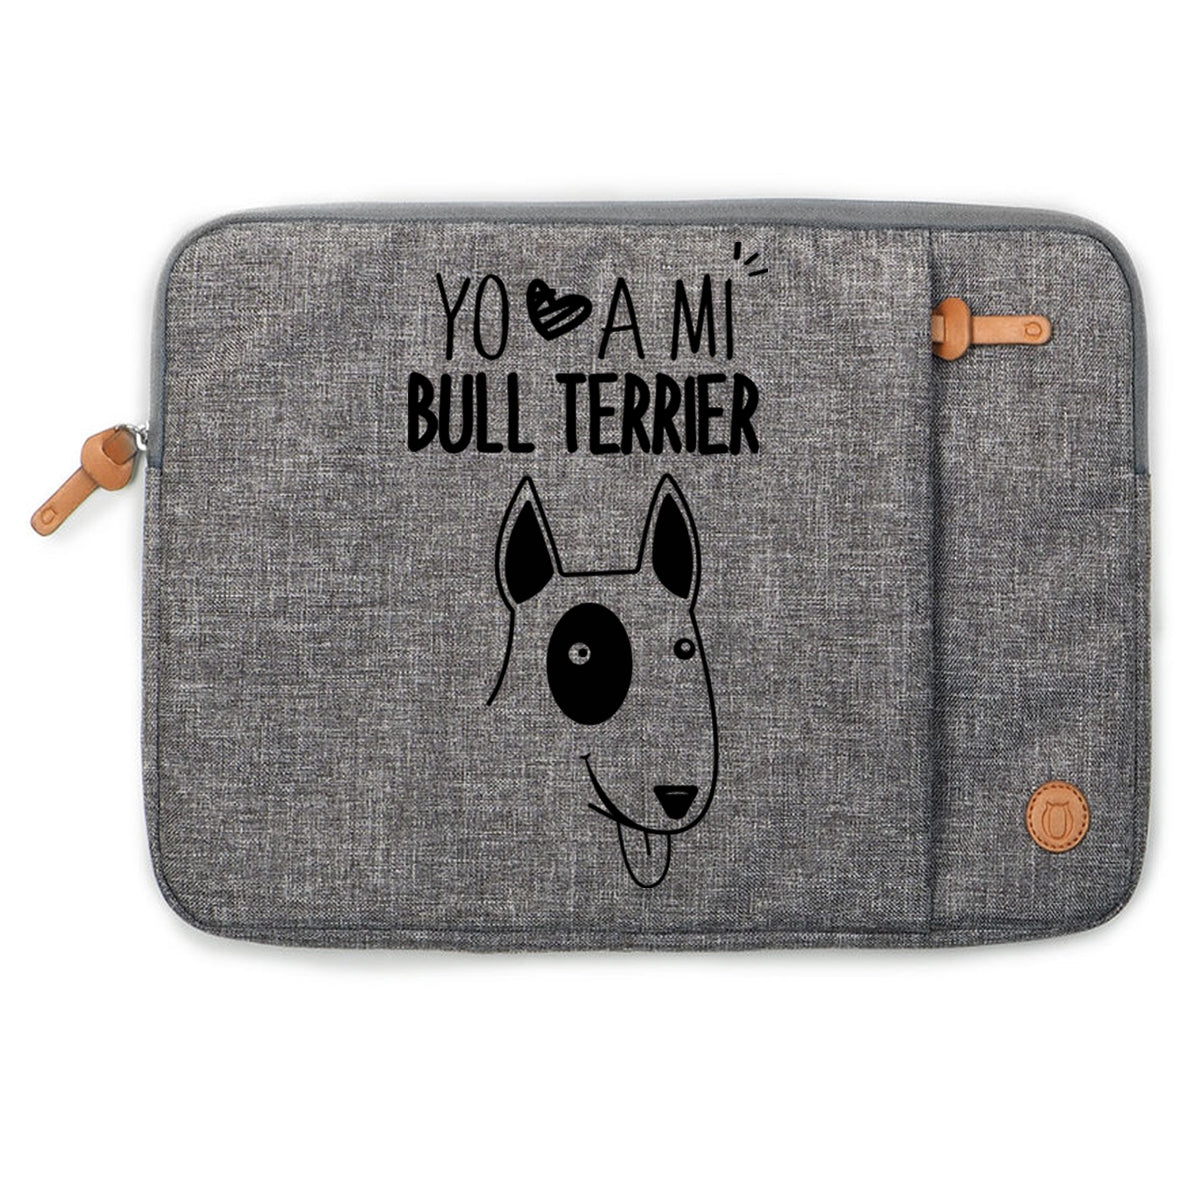 Funda Notebook / Tablet Bull Terrier